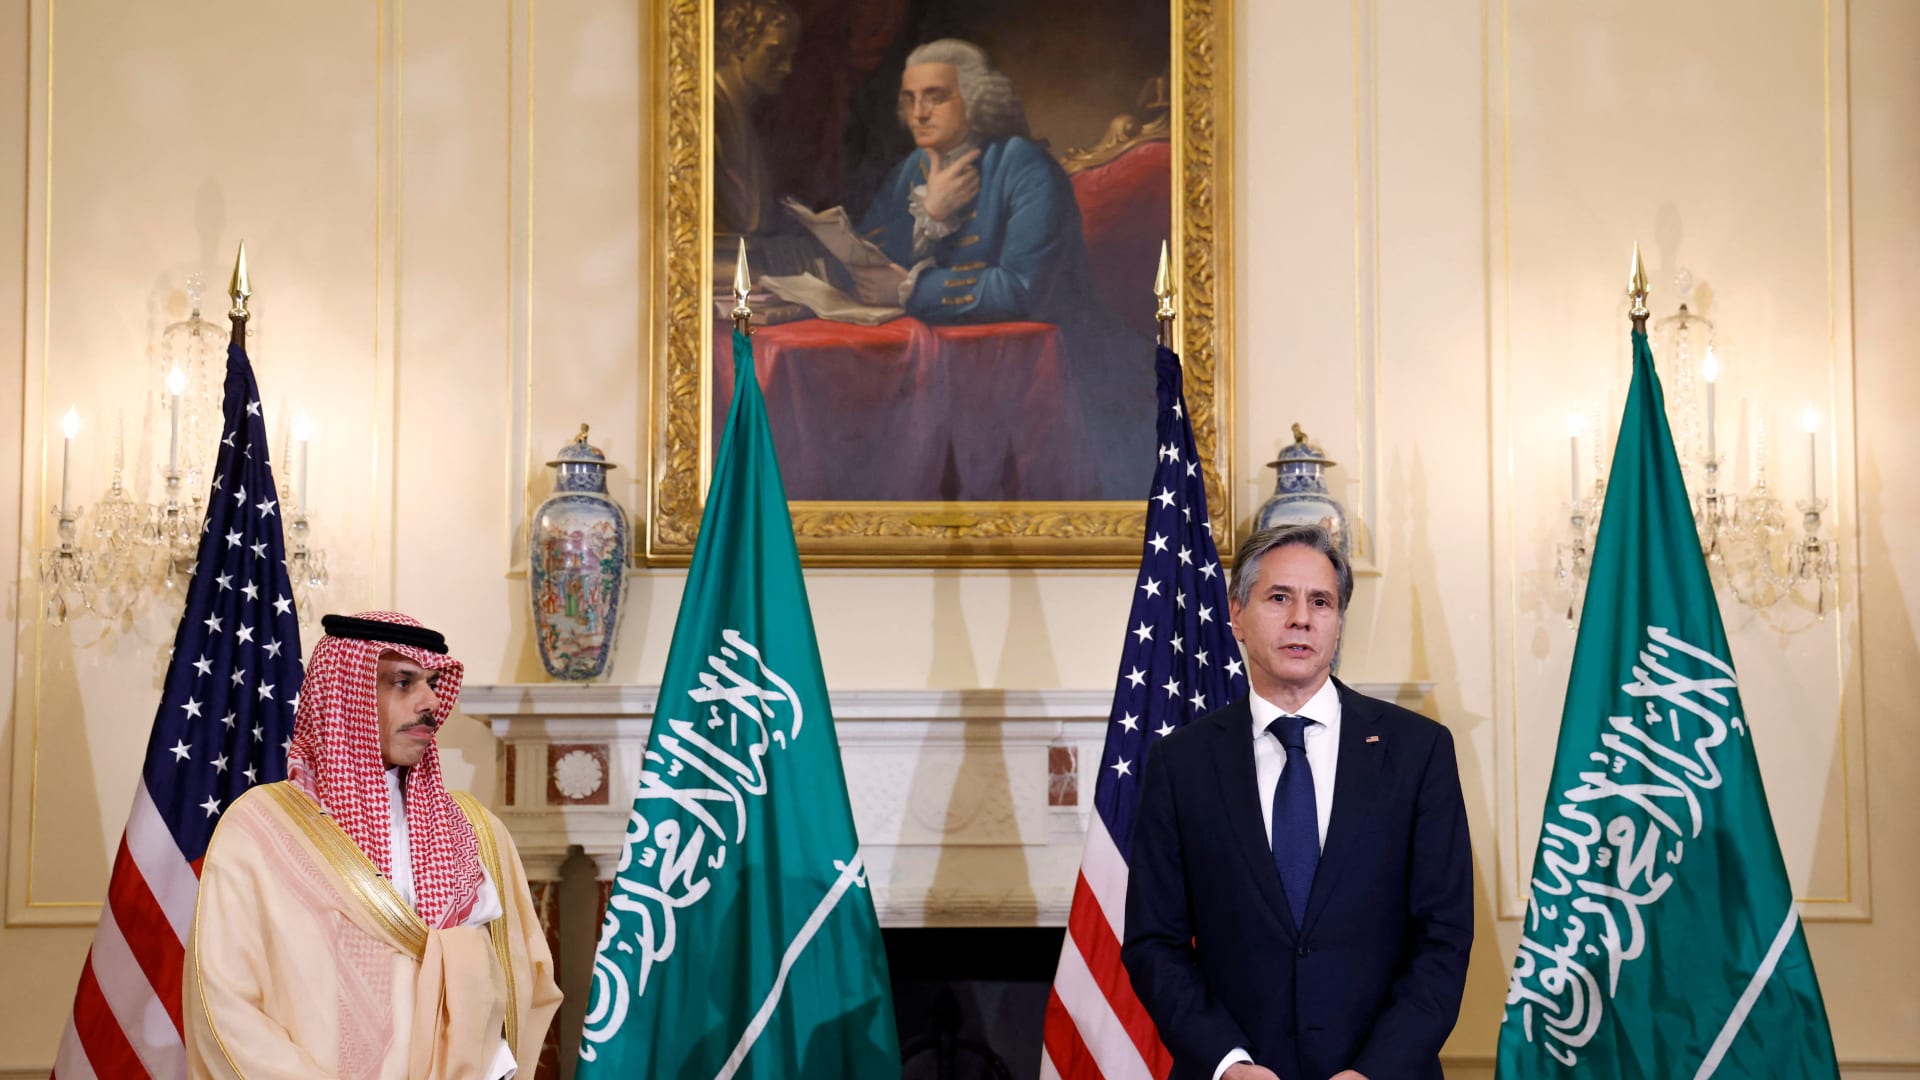 وزير الخارجية الأمريكي أنتوني بلينكين ونظيره السعودي الأمير فيصل بن فرحان في مؤتمر صحفي سابق في واشنطن (صورة أرشيفية)